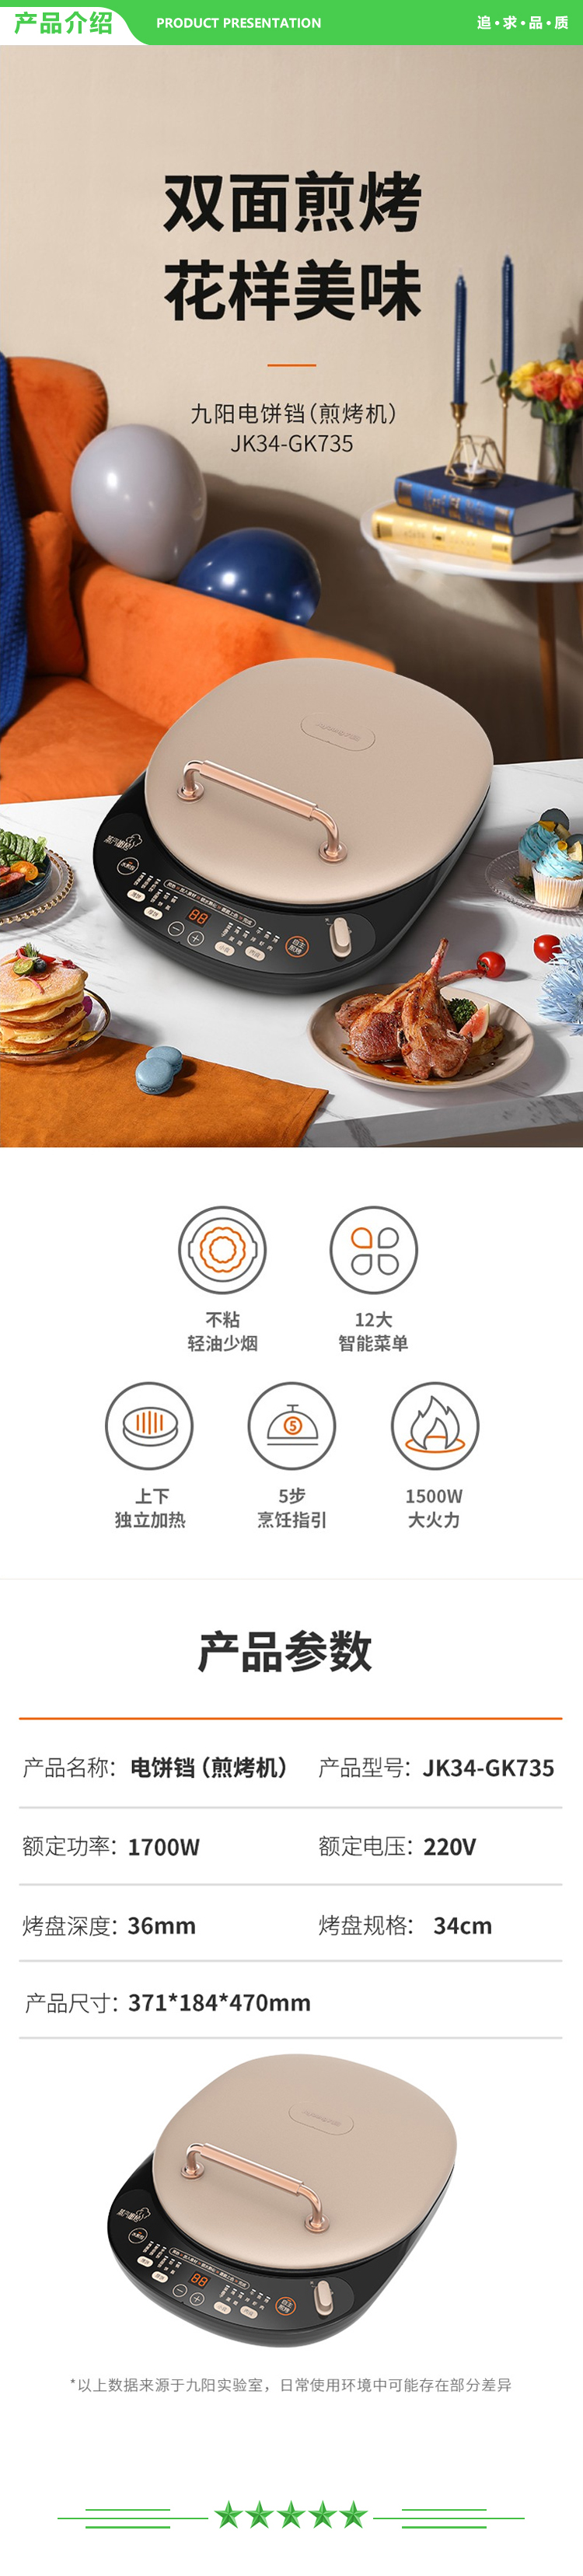 九阳 Joyoung JK34-GK735 ZMD安心系列 电饼铛 家用双面加热煎饼烙饼锅36mm加深烤盘.jpg